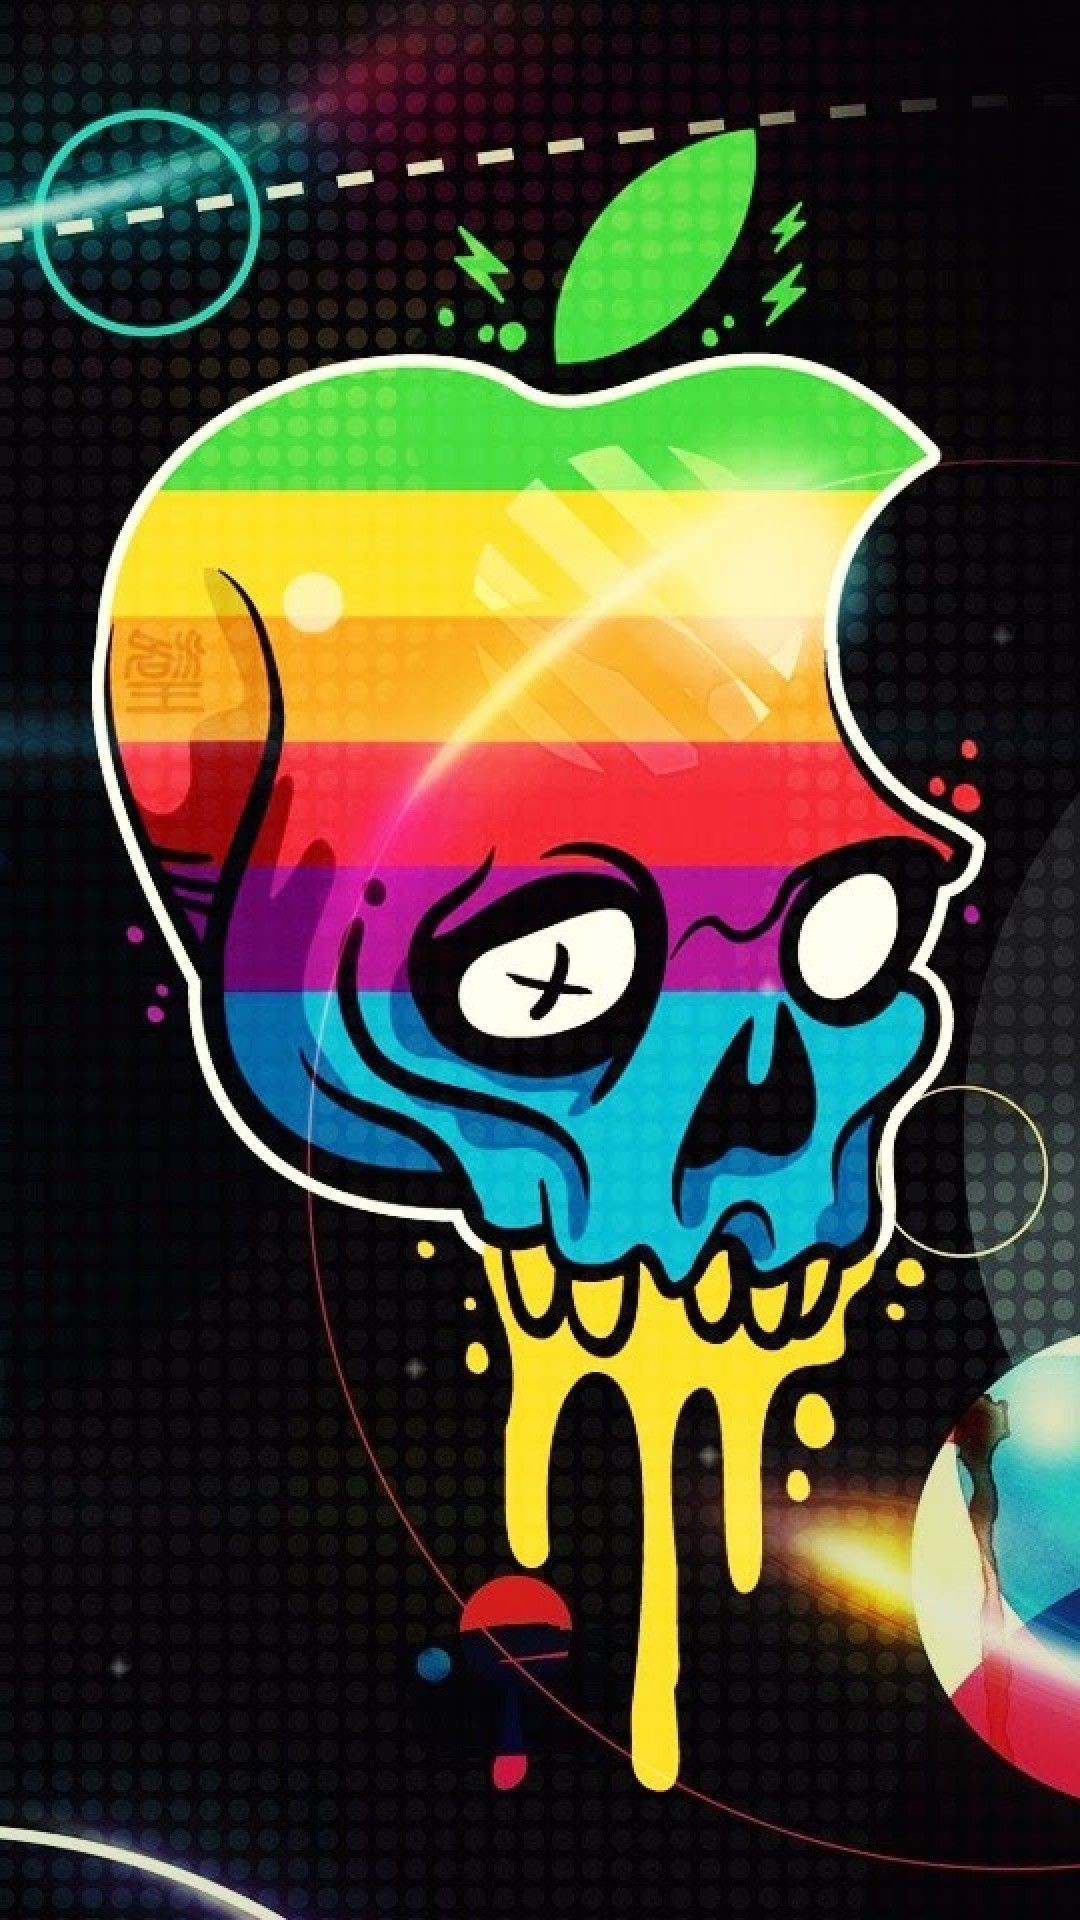 graffiti wallpaper for android,graphic design,illustration,skull,design,art